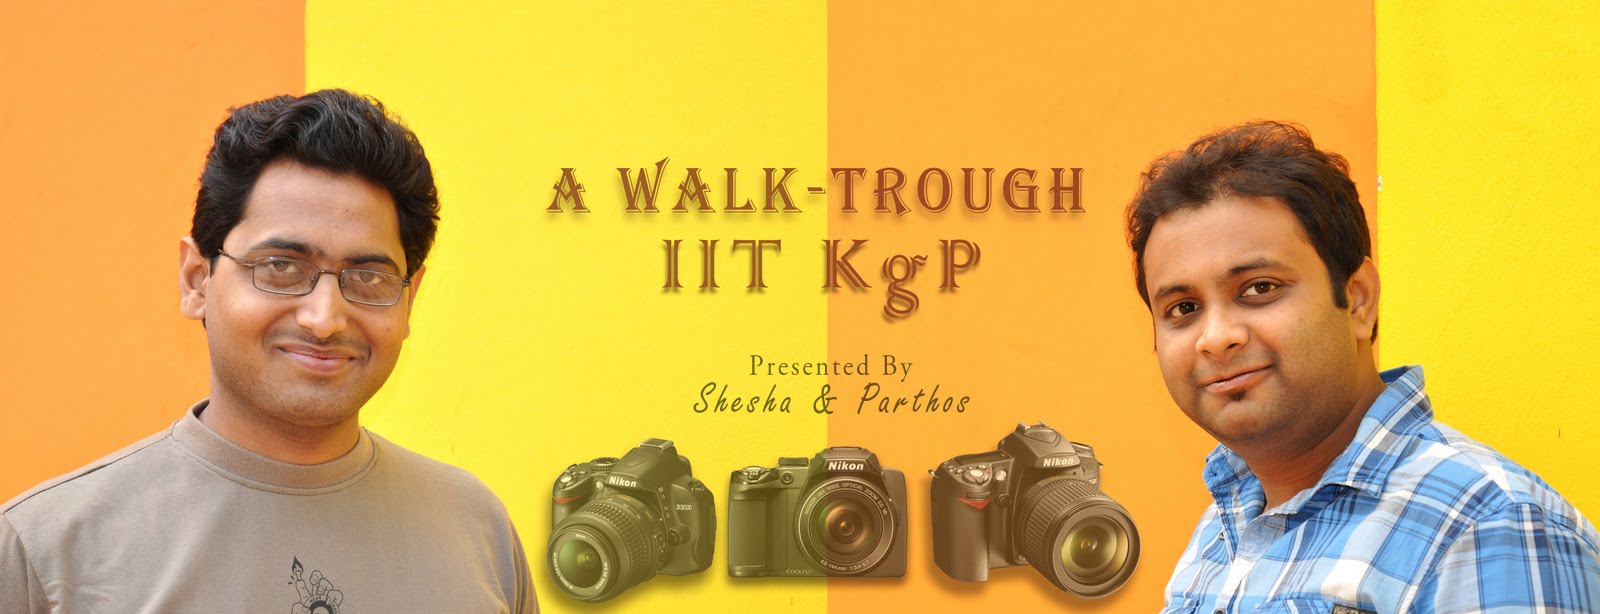 A Walk-Through IIT KgP